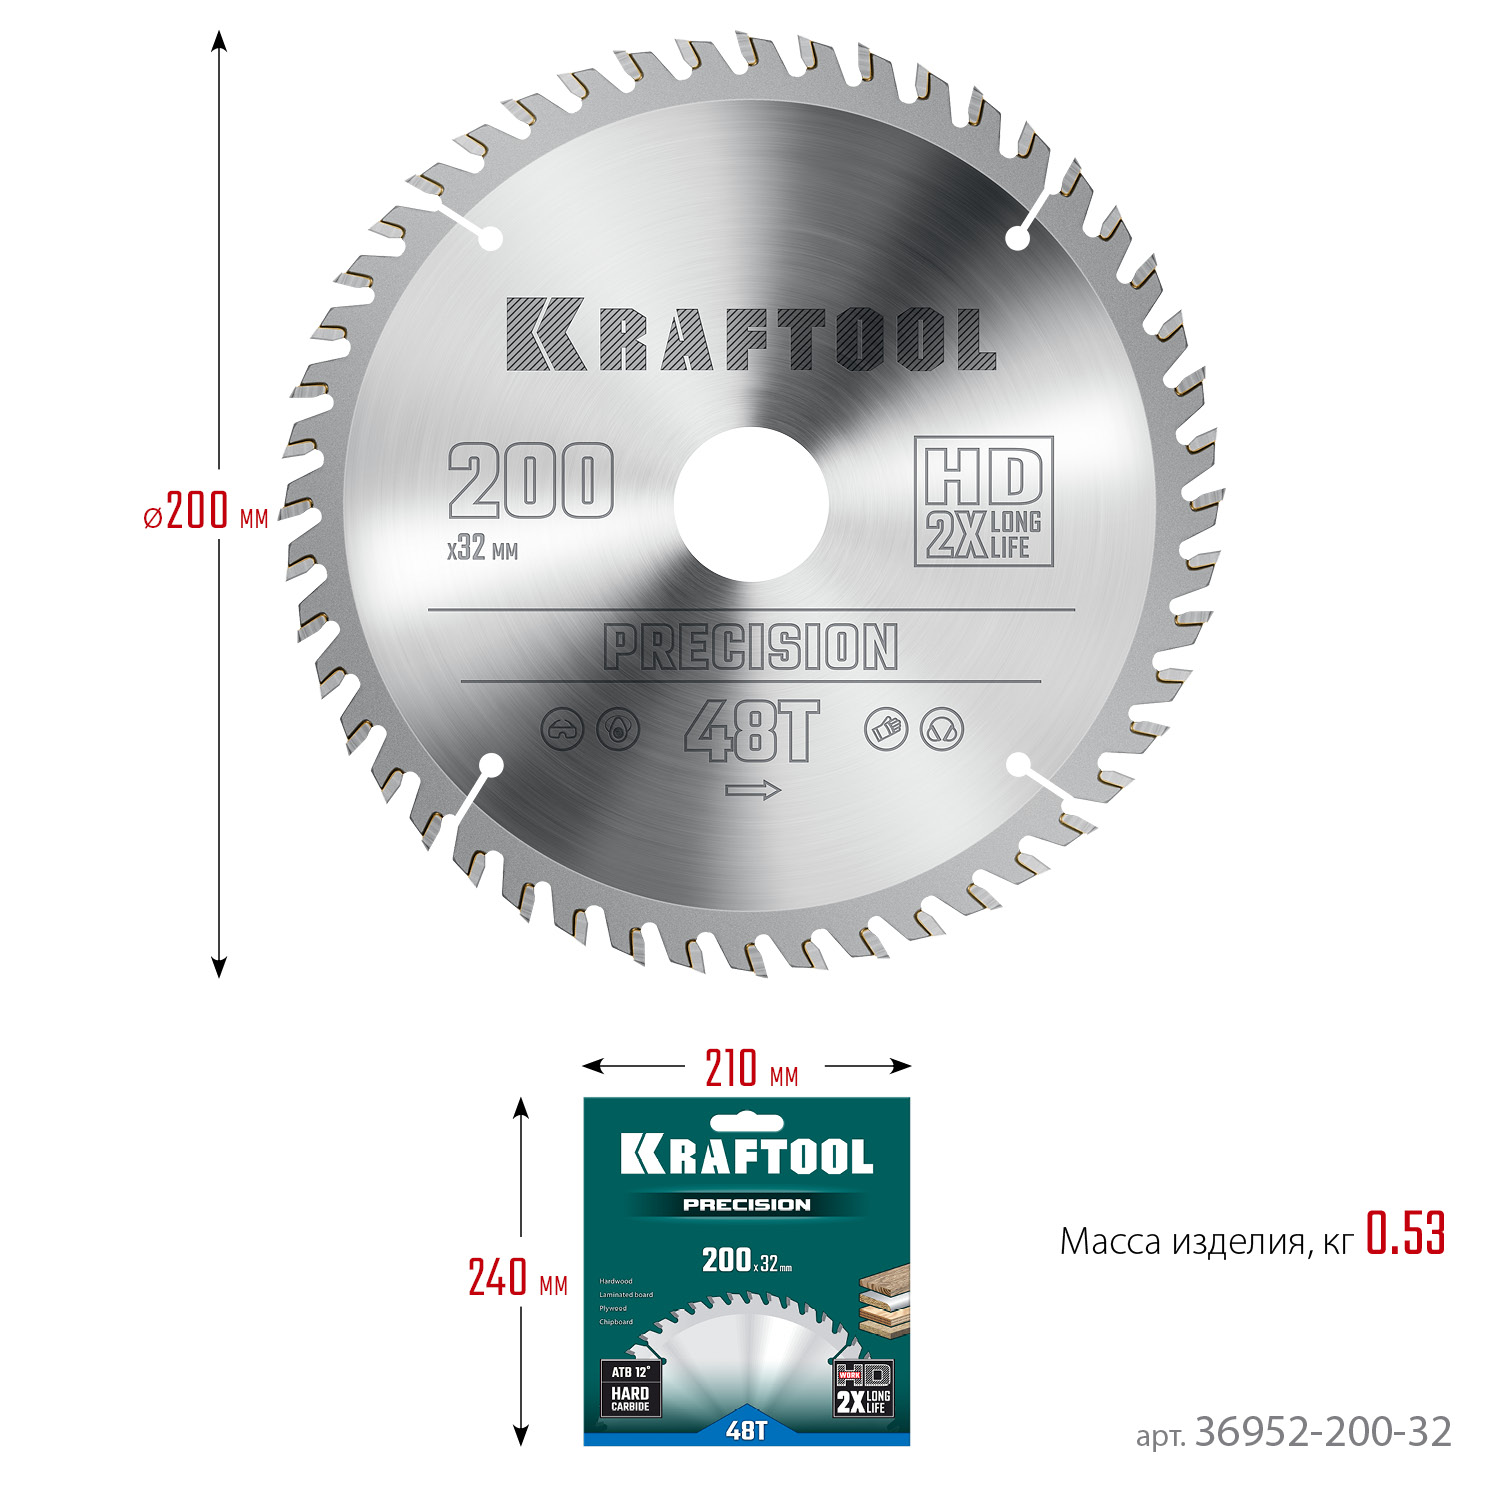 KRAFTOOL Precision, 200 х 32 мм, 48Т, пильный диск по дереву (36952-200-32)